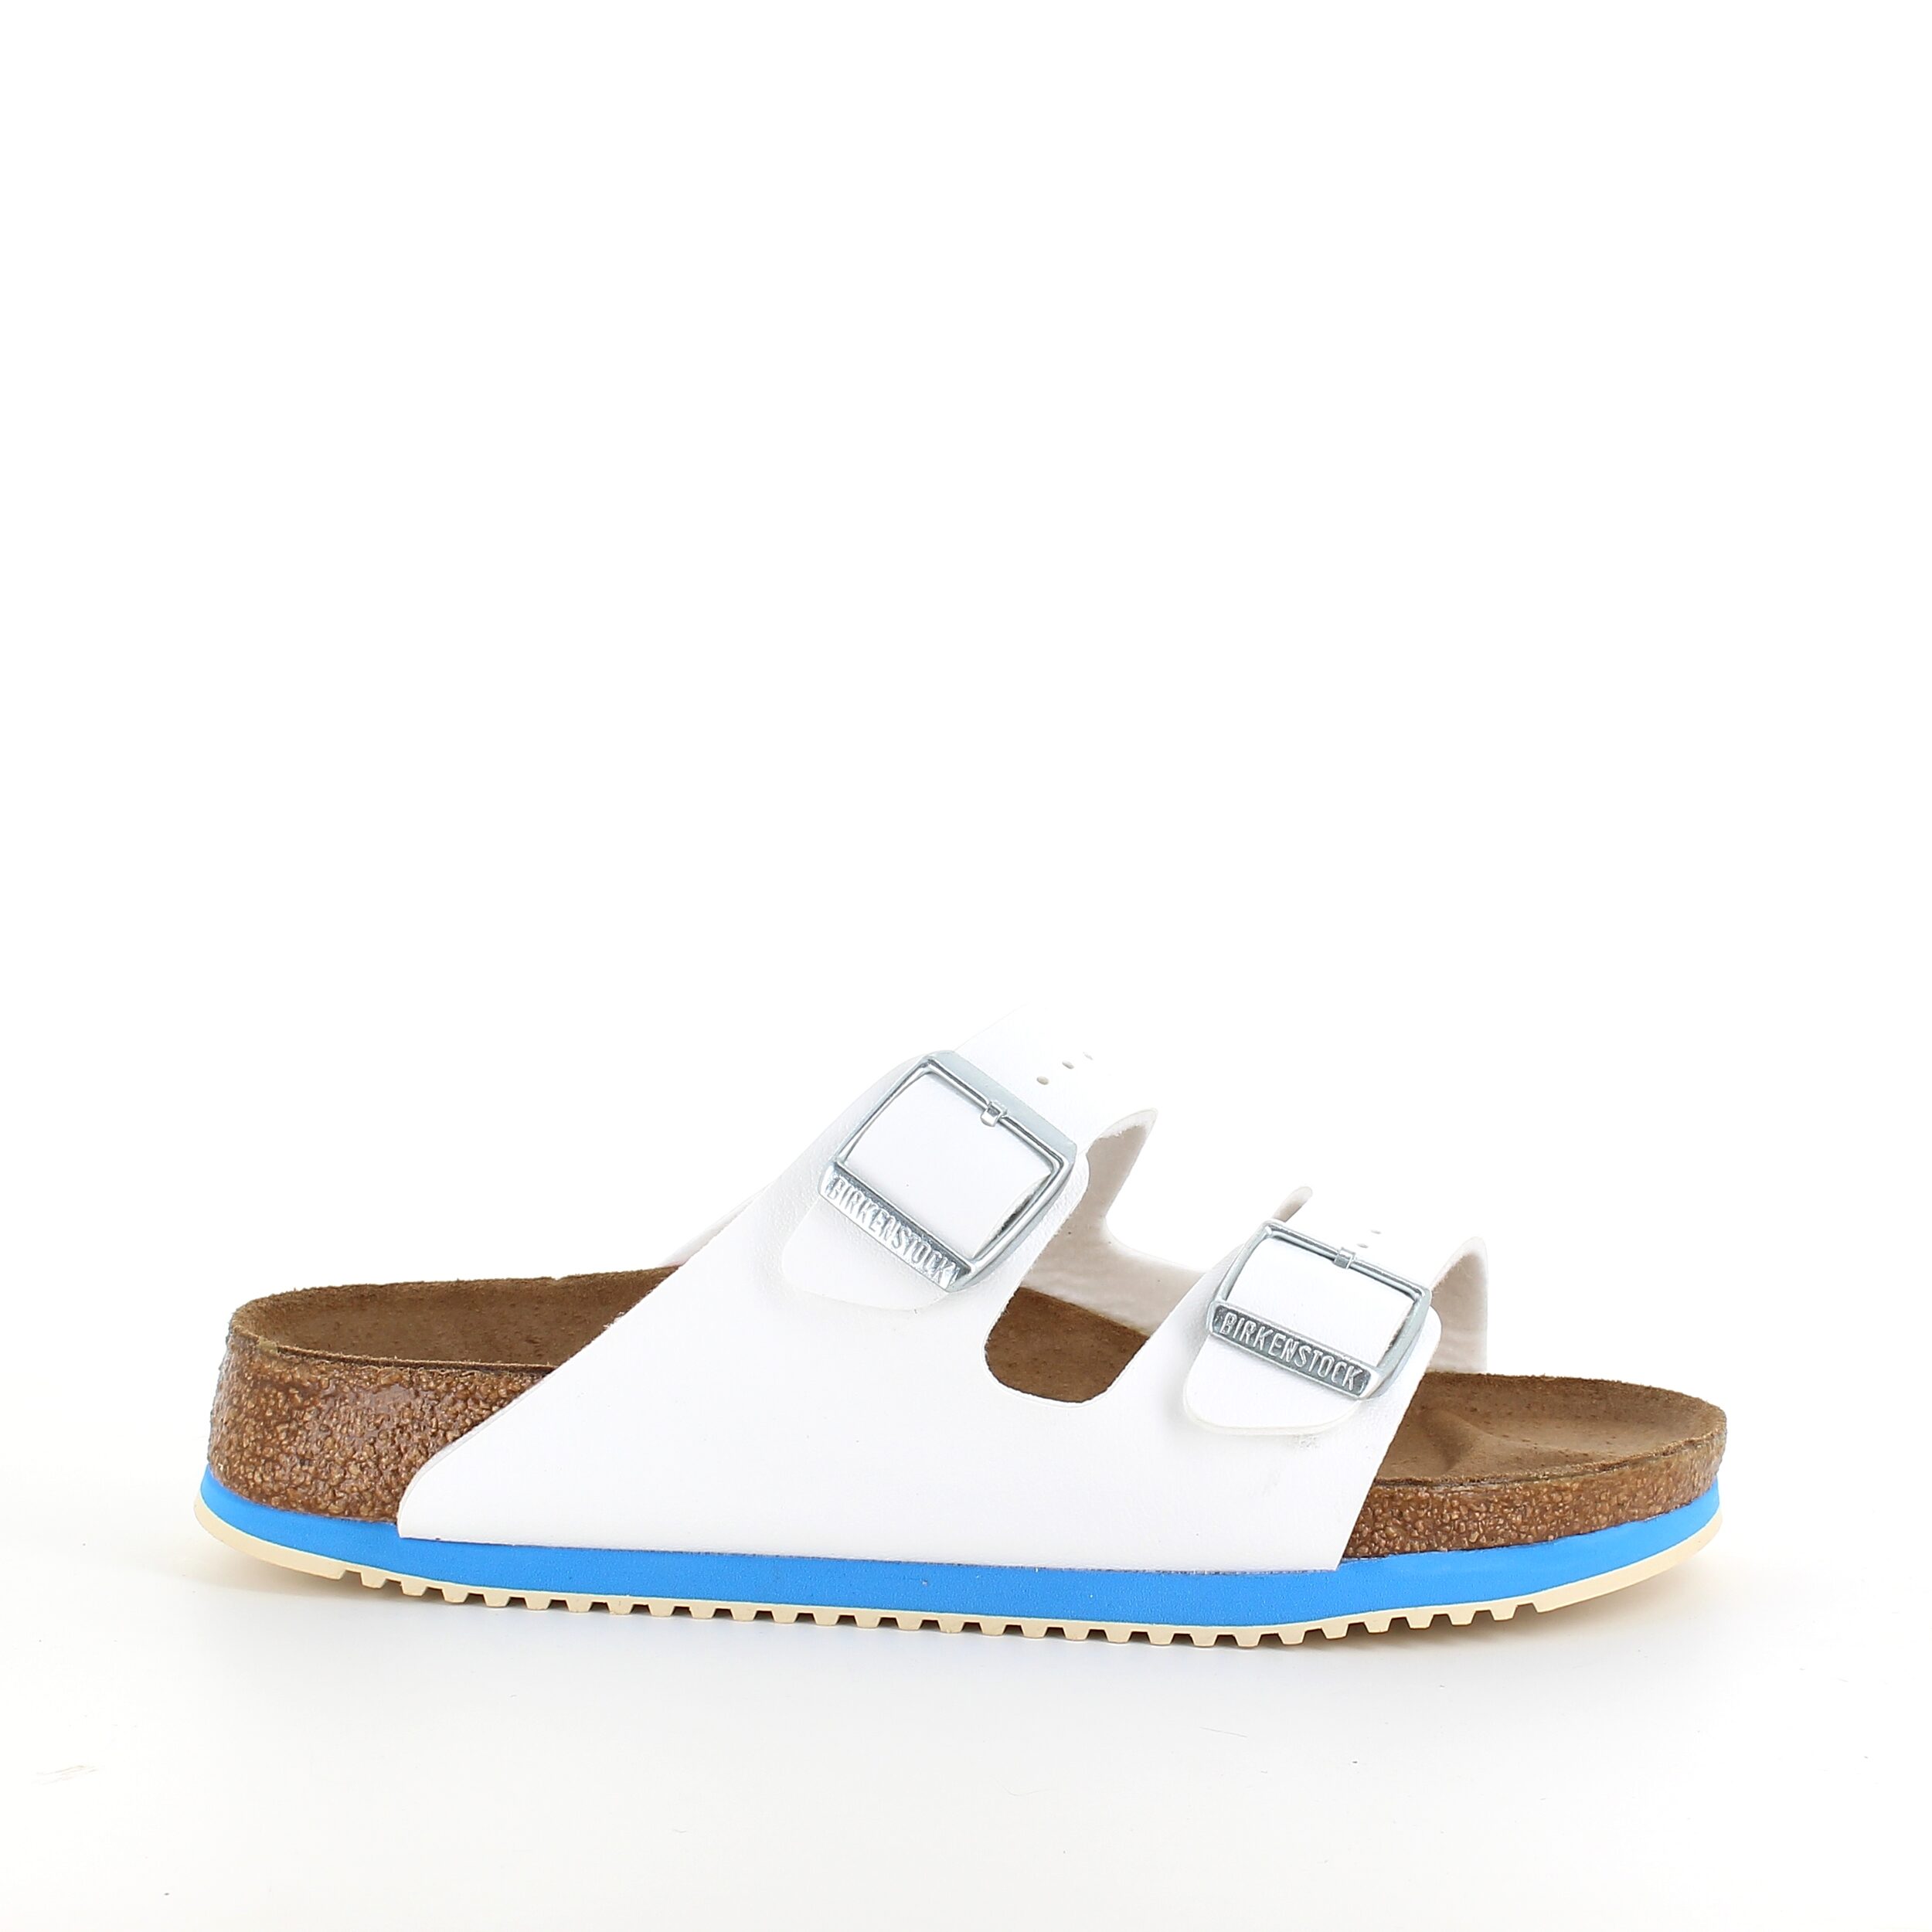 8: Hvid Arizona sandal fra Birkenstock med godkendte skridhæmmende såler - 47